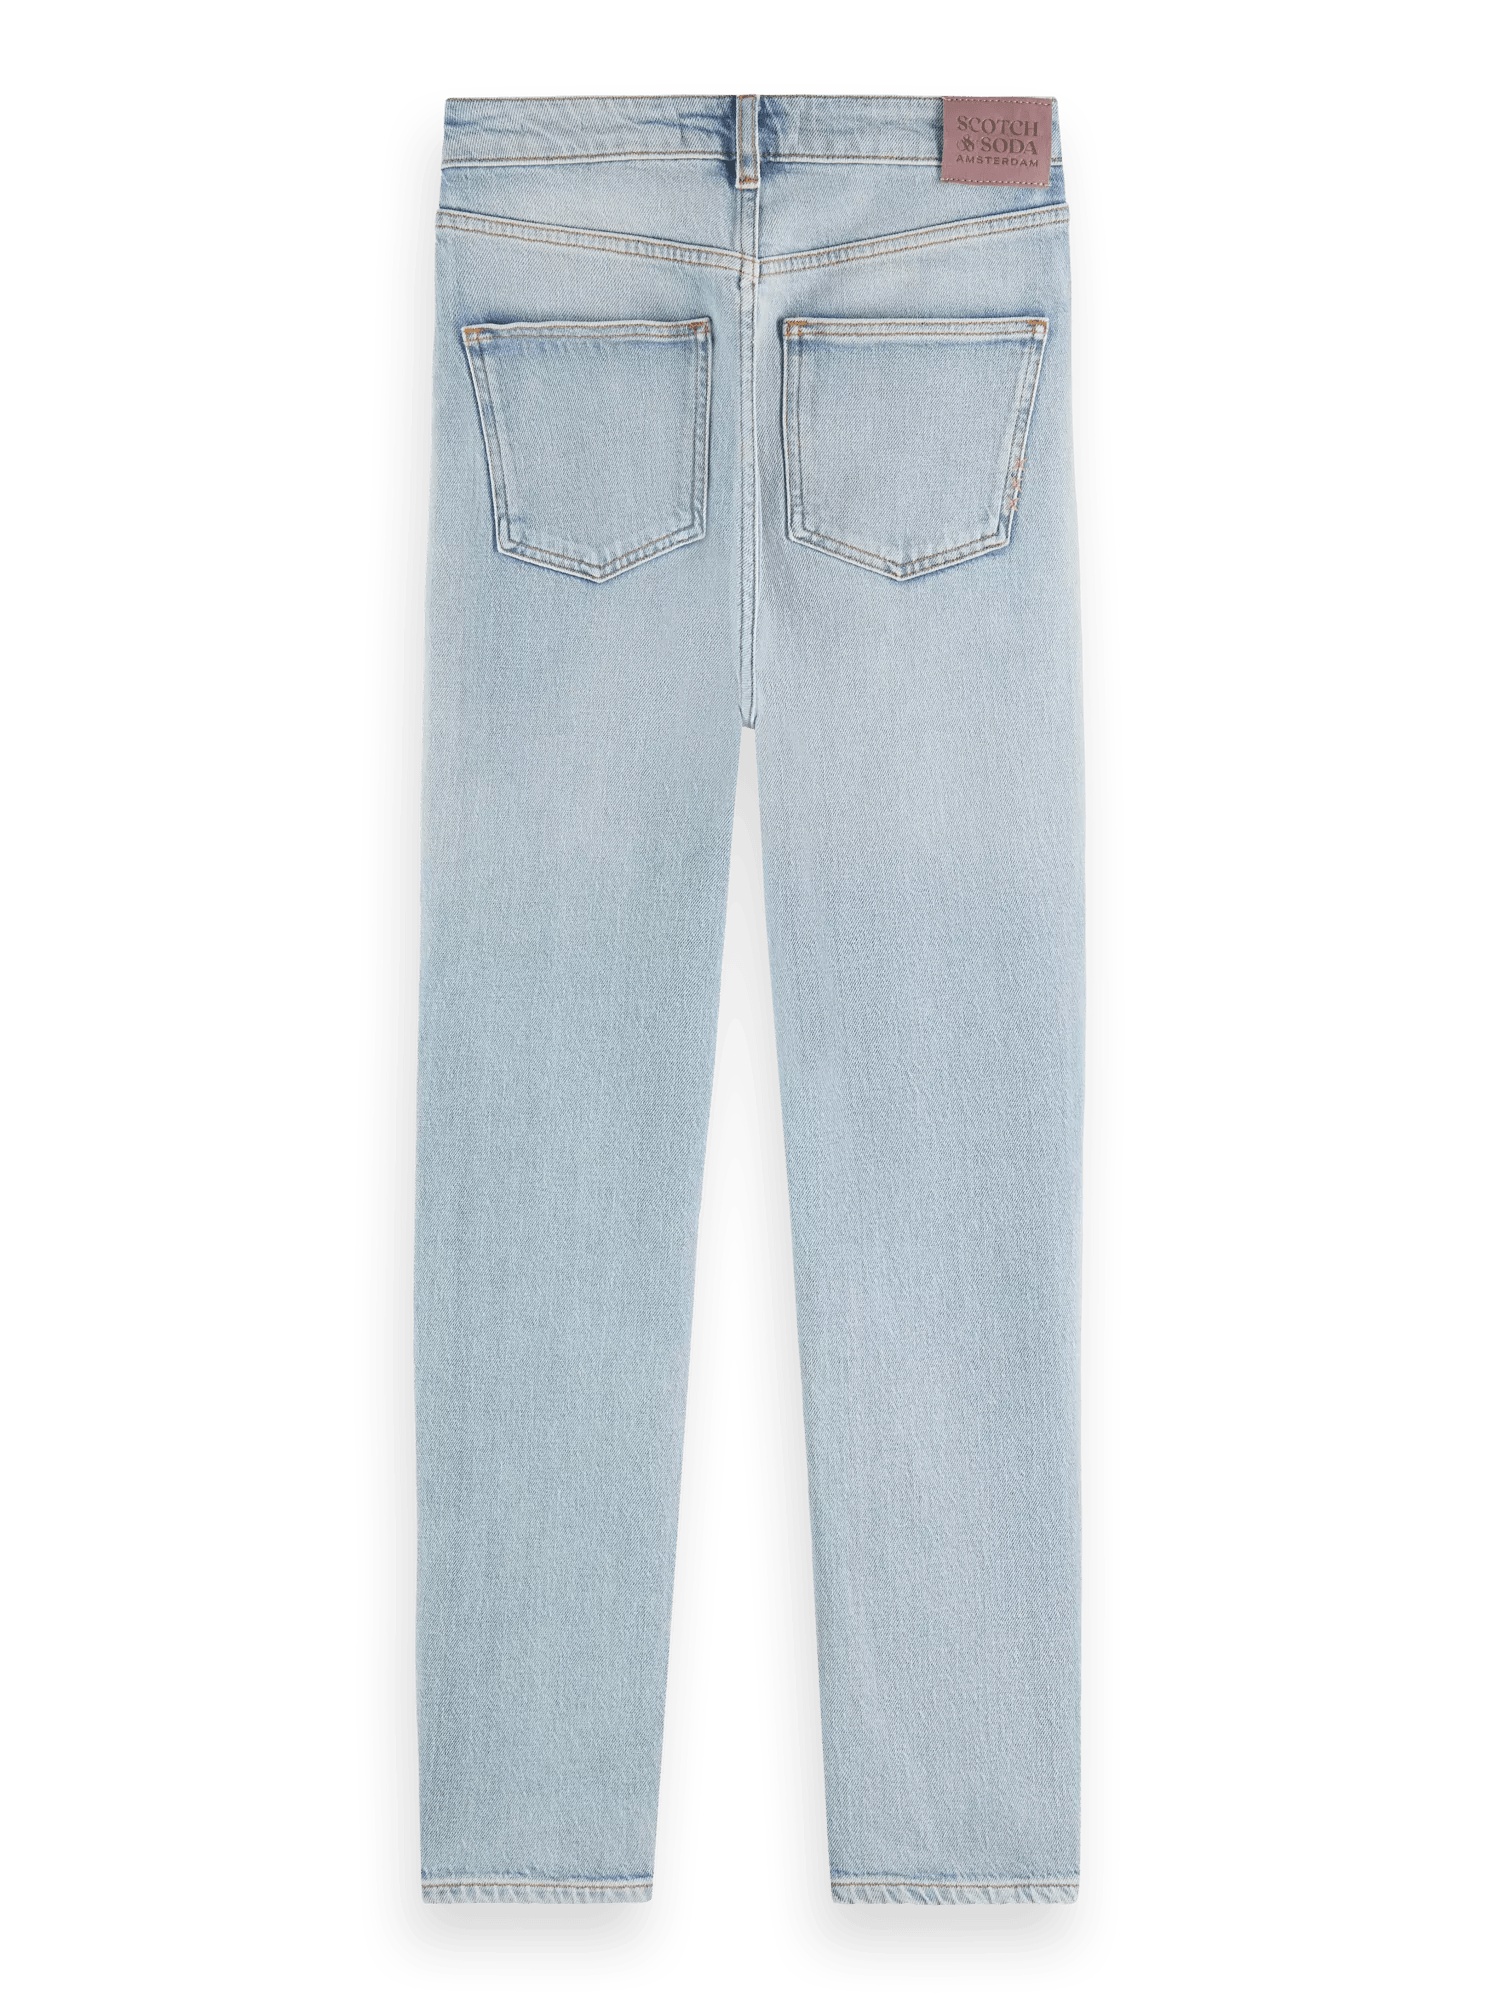 Scotch & Soda High Five high-rise slim fit jeans BCK